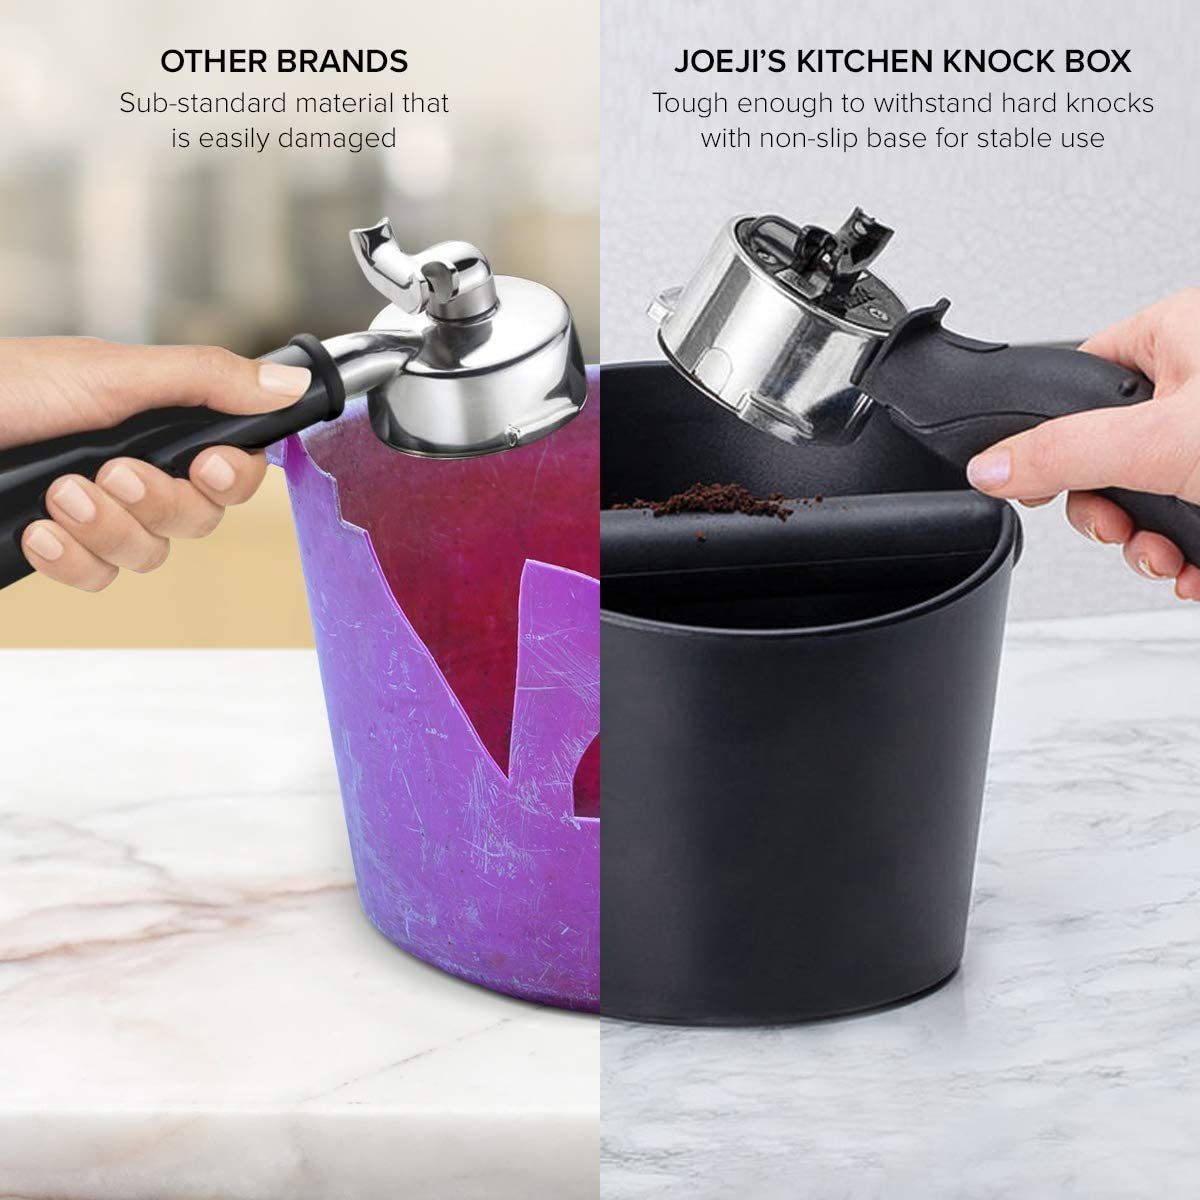 KITCHEN Box für Abklopfbehälter Siebträger Zubehör JOEJI’S Maschinen Espresso Knock Kaffeeservice